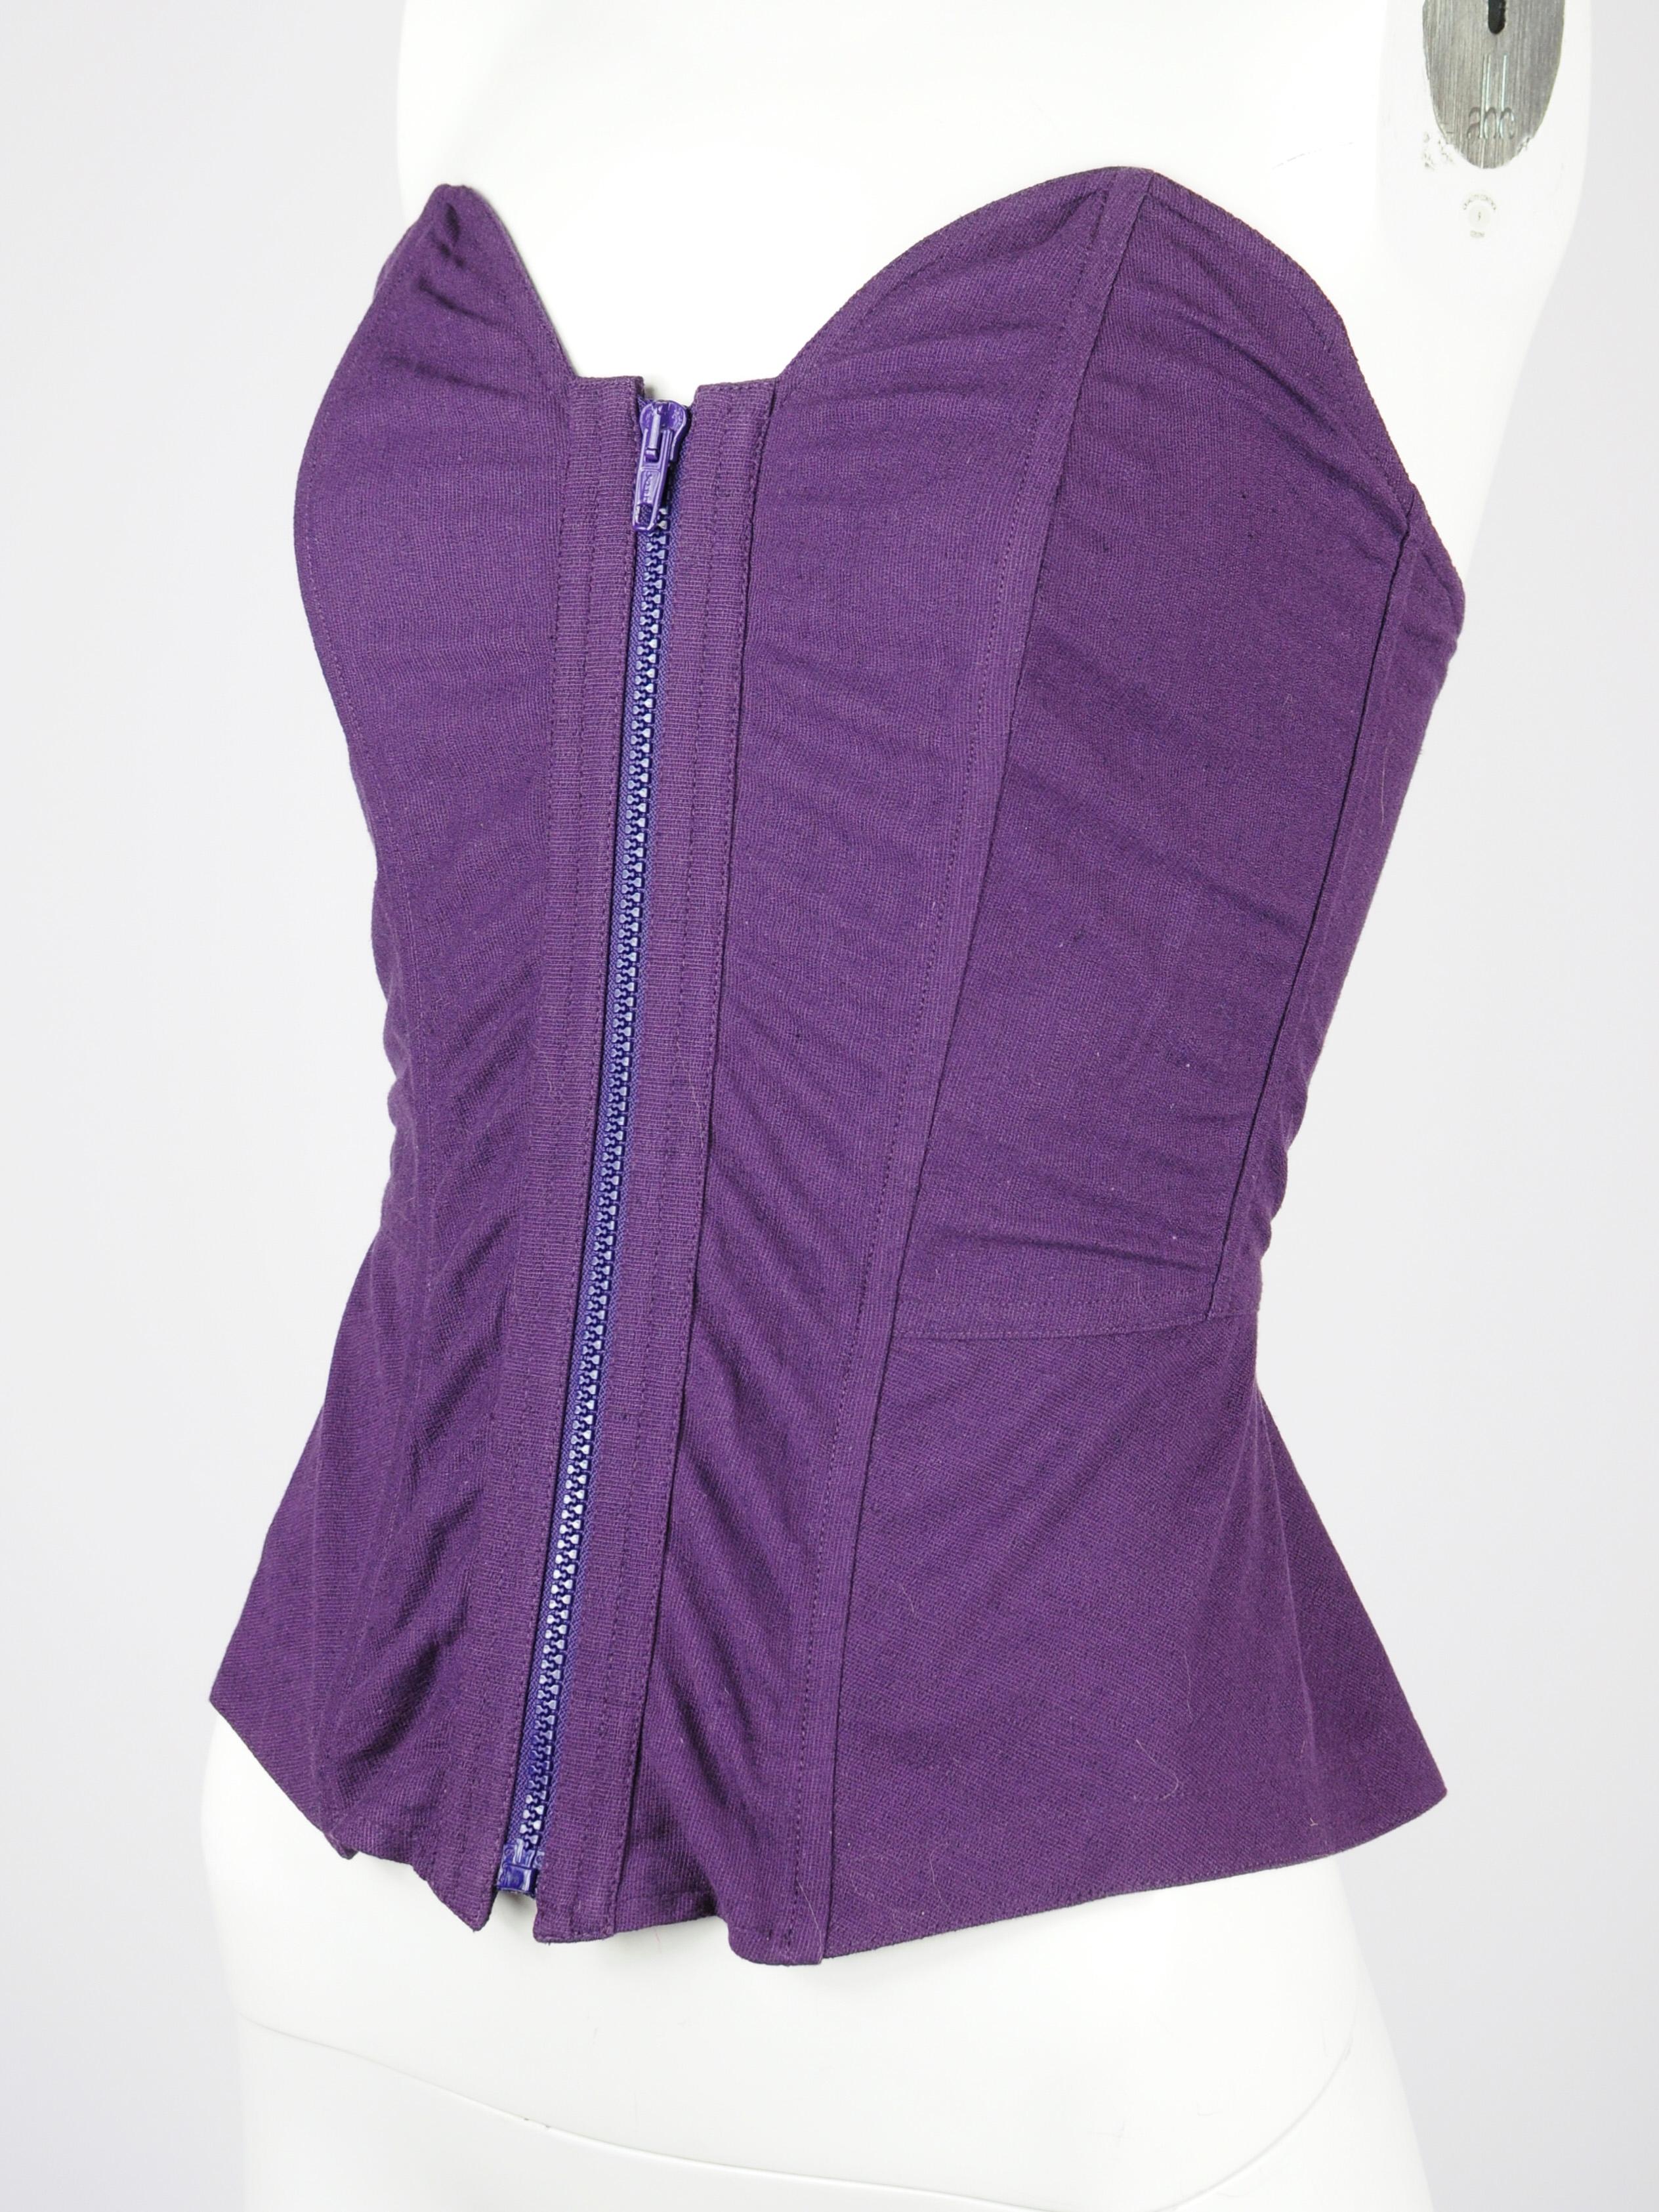 La Perla Korsett-Top aus violettem Leinen-Baumwoll-Gemisch  aus den frühen 1990er Jahren. Dieses La Perla Korsett ist deadstock, d.h. es ist neu mit Etiketten und wurde noch nie getragen. Es ist mit Stäbchen verstärkt. Der Reißverschluss lässt sich